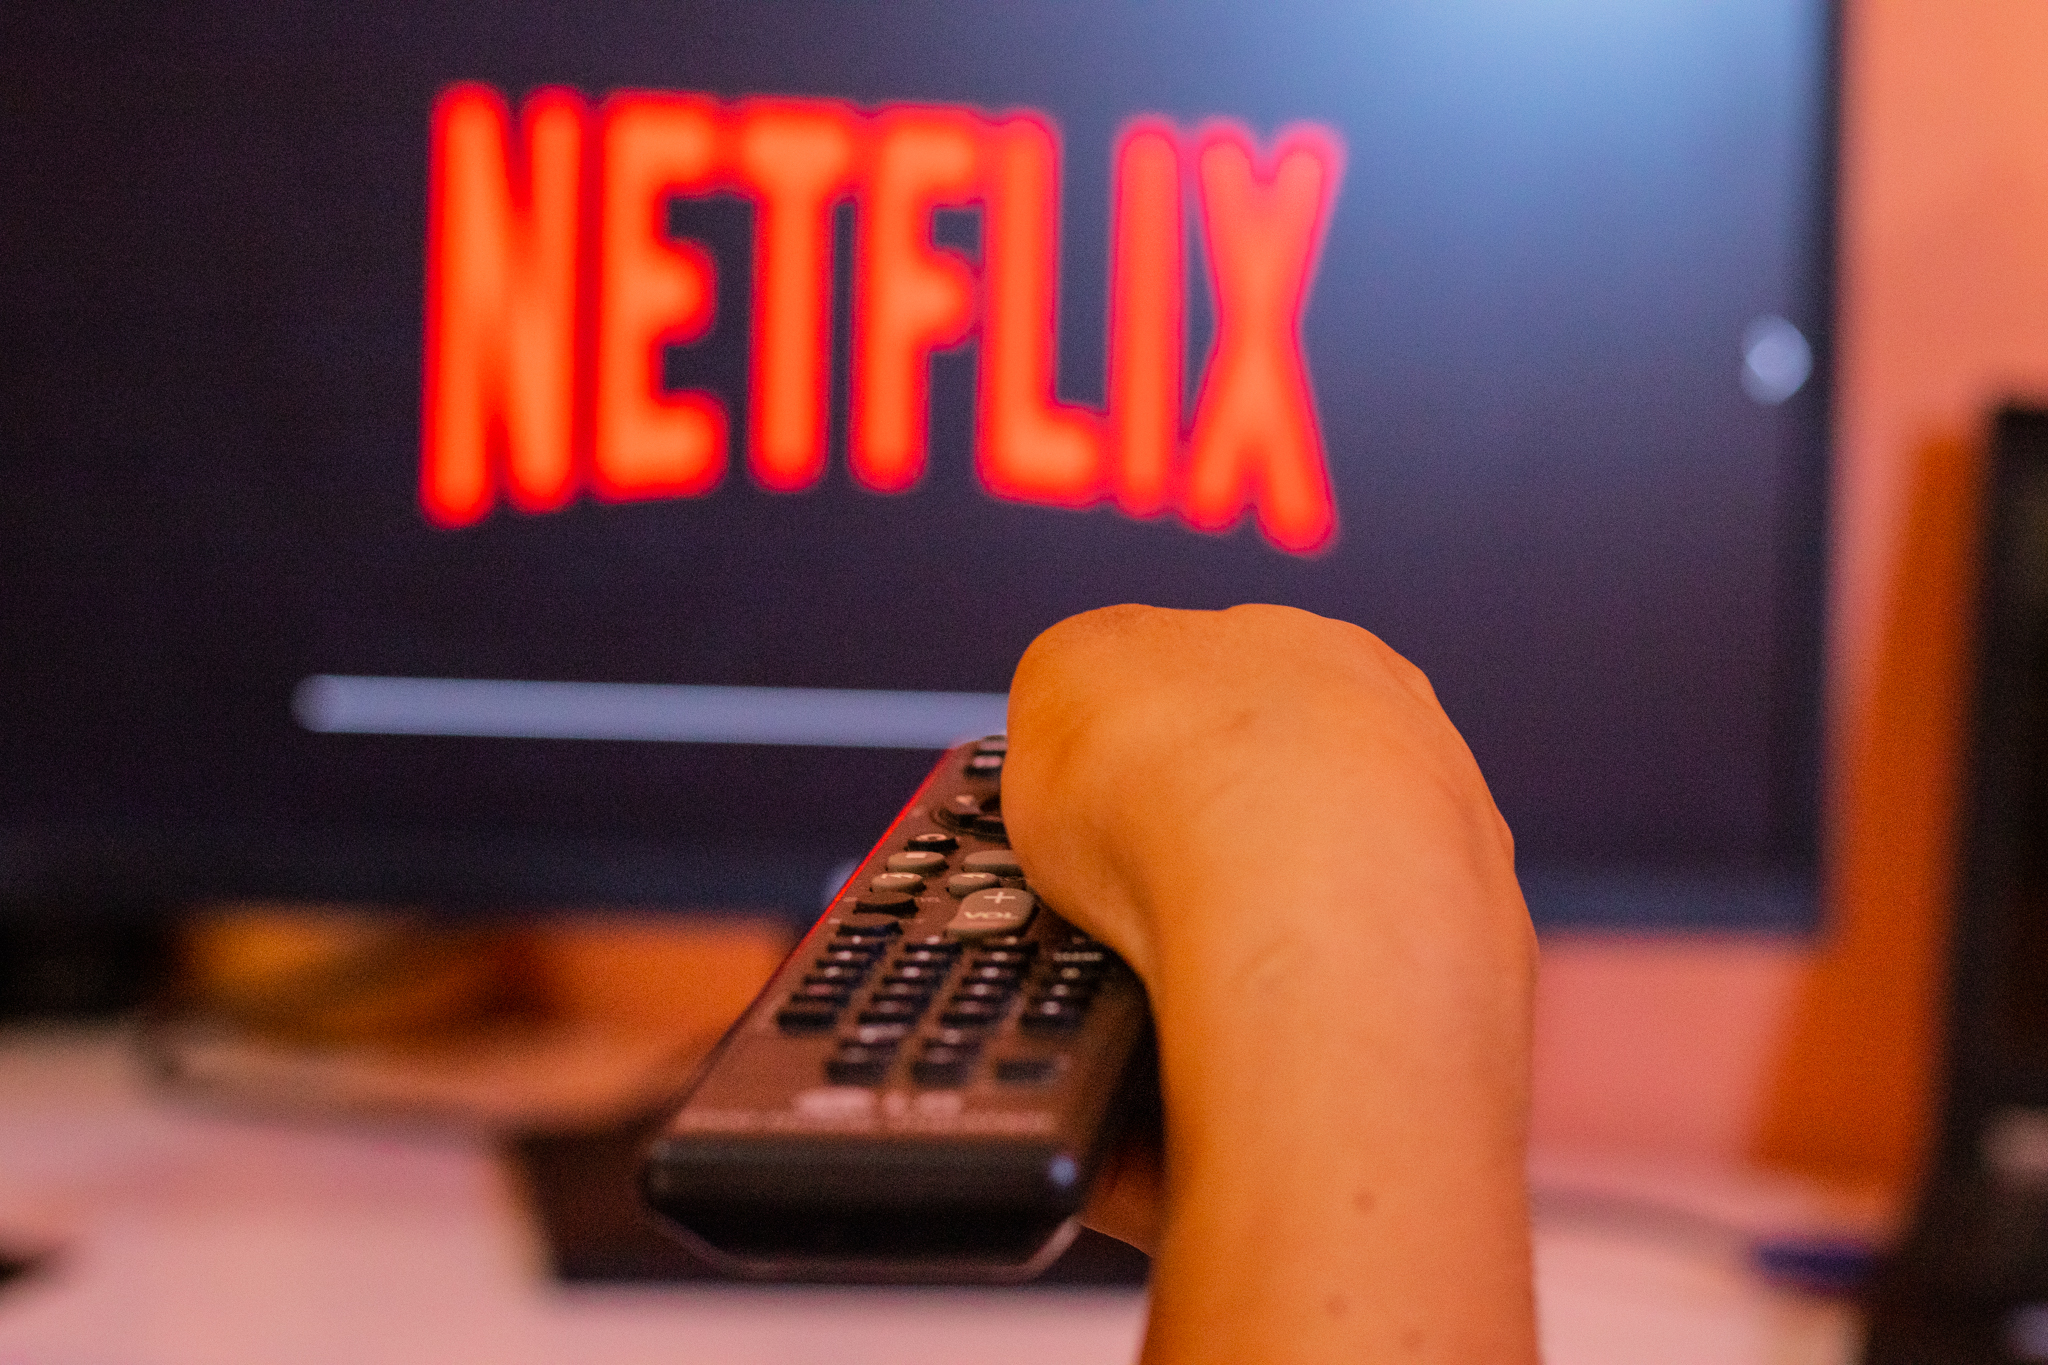  Vorsicht vor neuem Web-Betrug mit Netflix-Namen und Werbung auf YouTube